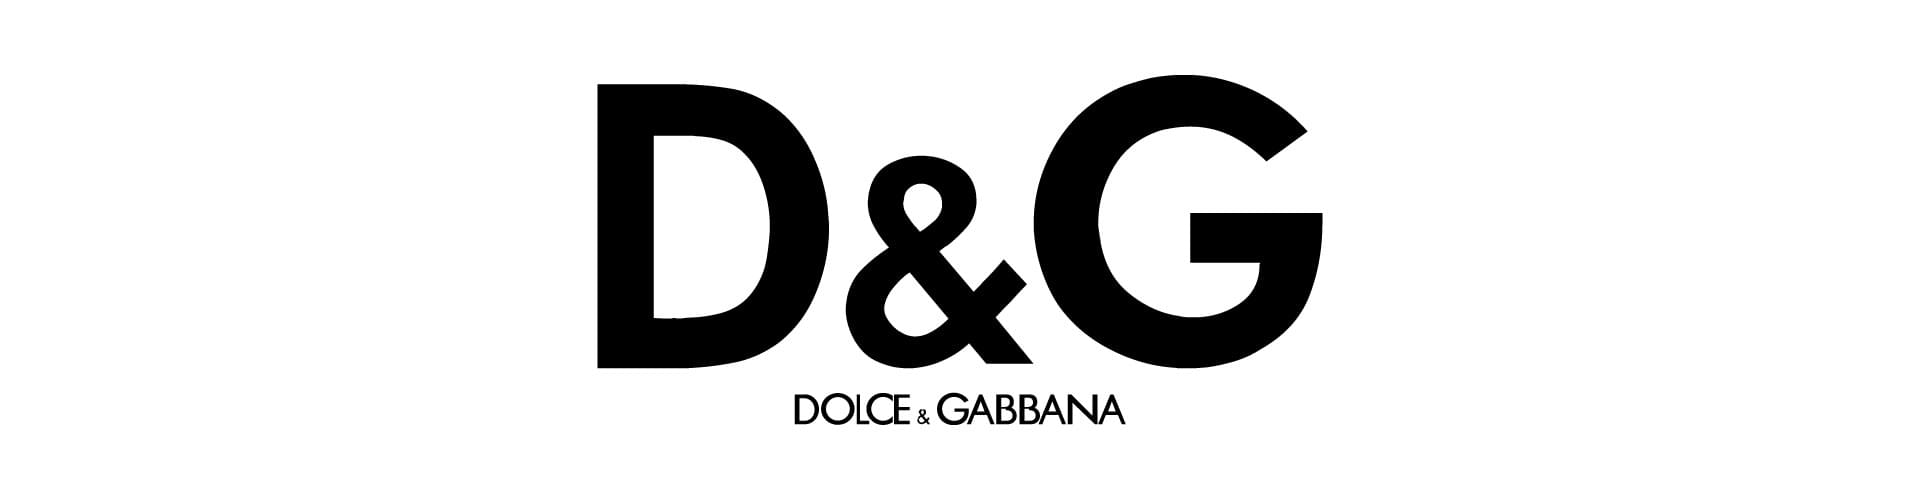 D&G, Dolce & Gabbana, Domenico Dolce, Stefano Gabbana